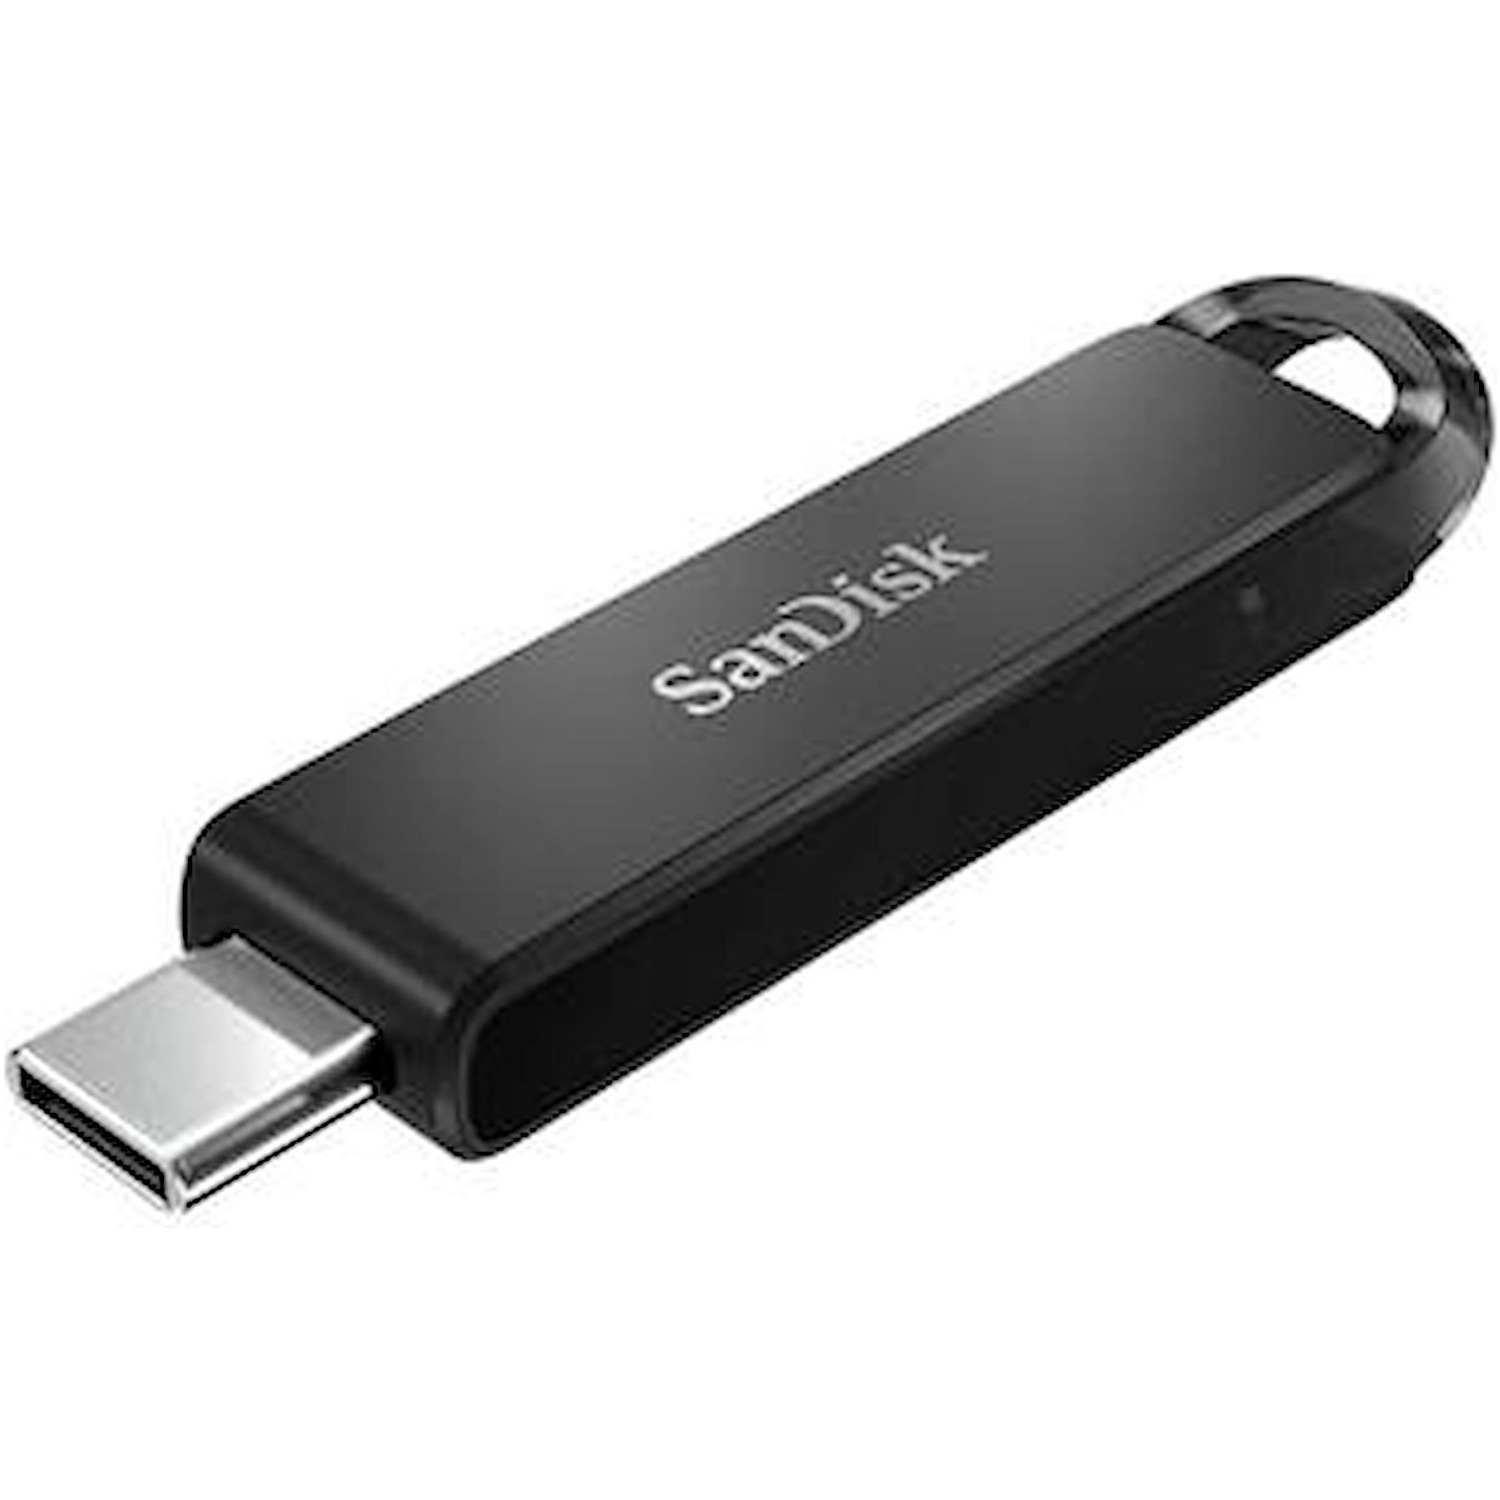 Immagine per Memoria USB San Disk Cruzer Ultra 64 GB 3.1 Type-C da DIMOStore